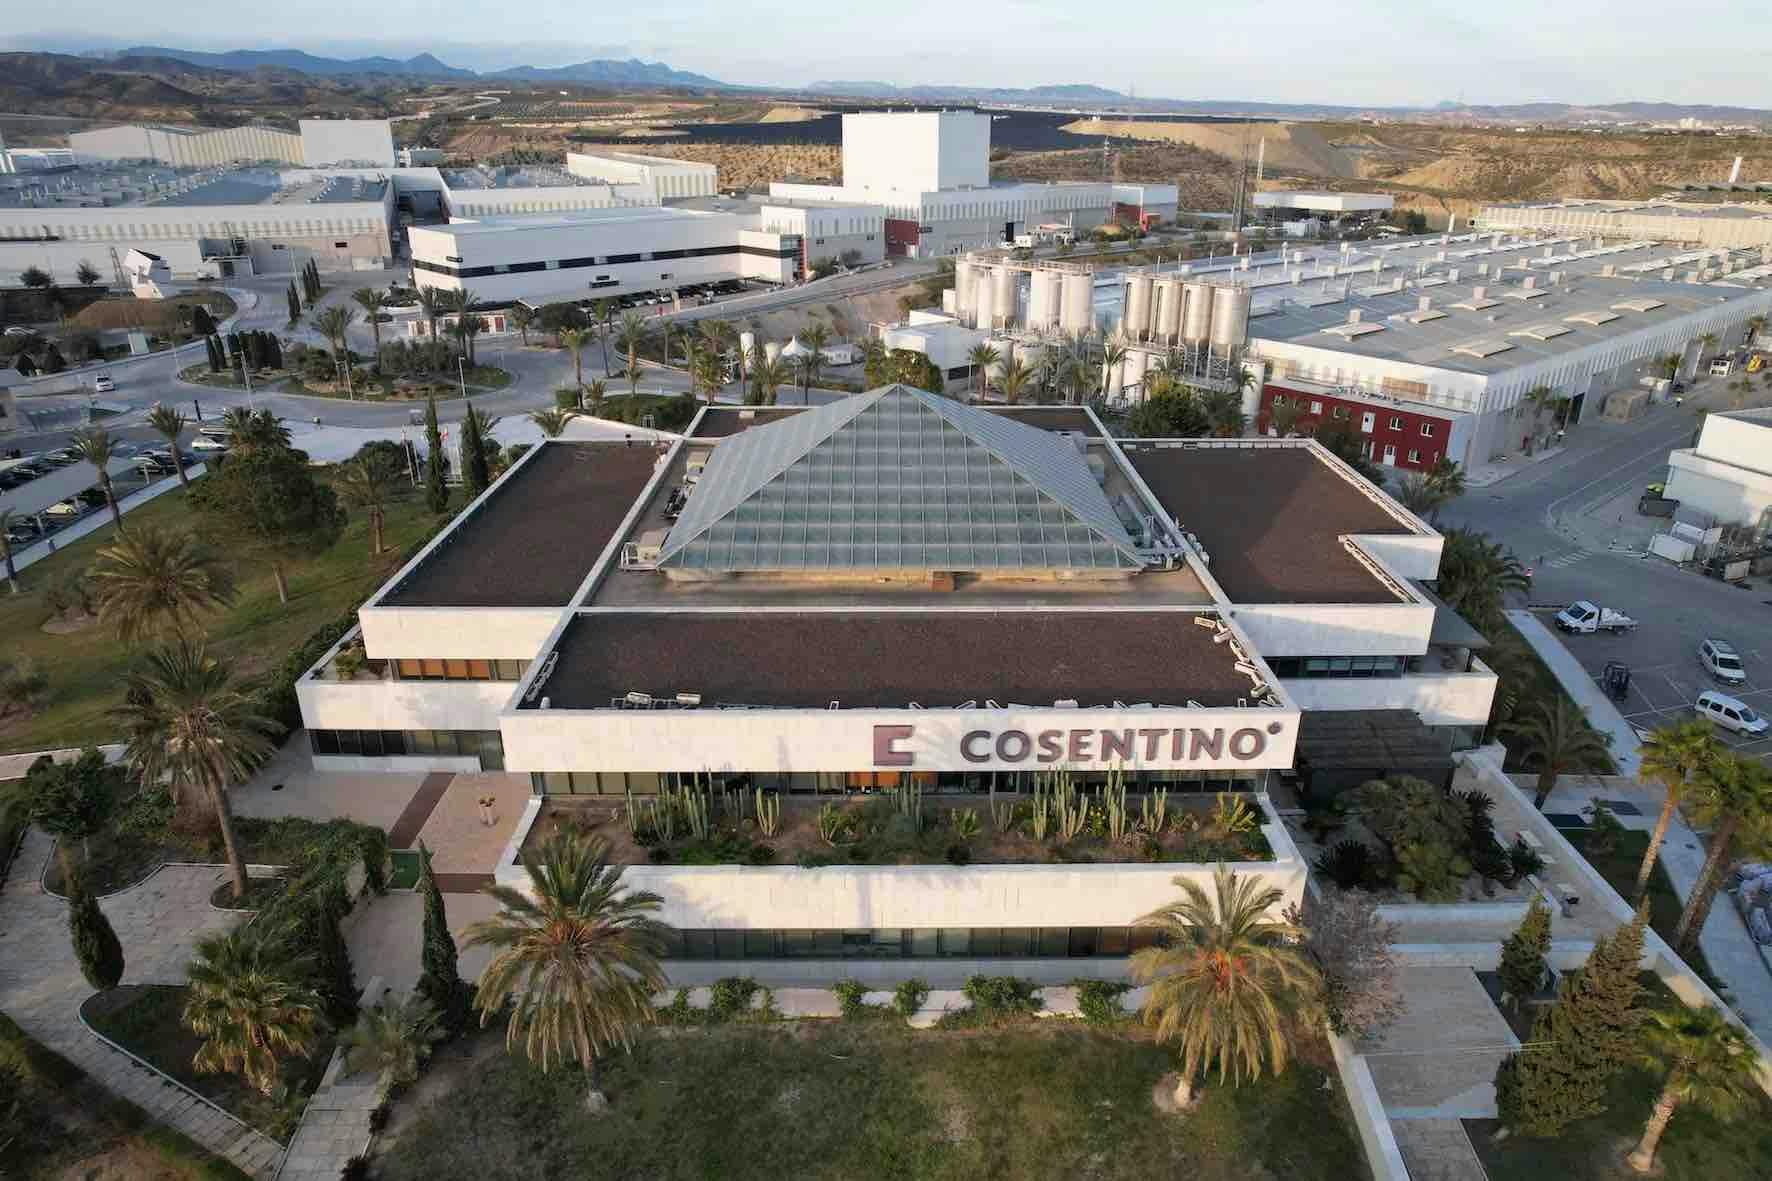 Image 31 of Parque Industrial Cosentino vista aerea oficinas d 1.jpg?auto=format%2Ccompress&ixlib=php 3.3 in Cosentino Statement - Cosentino